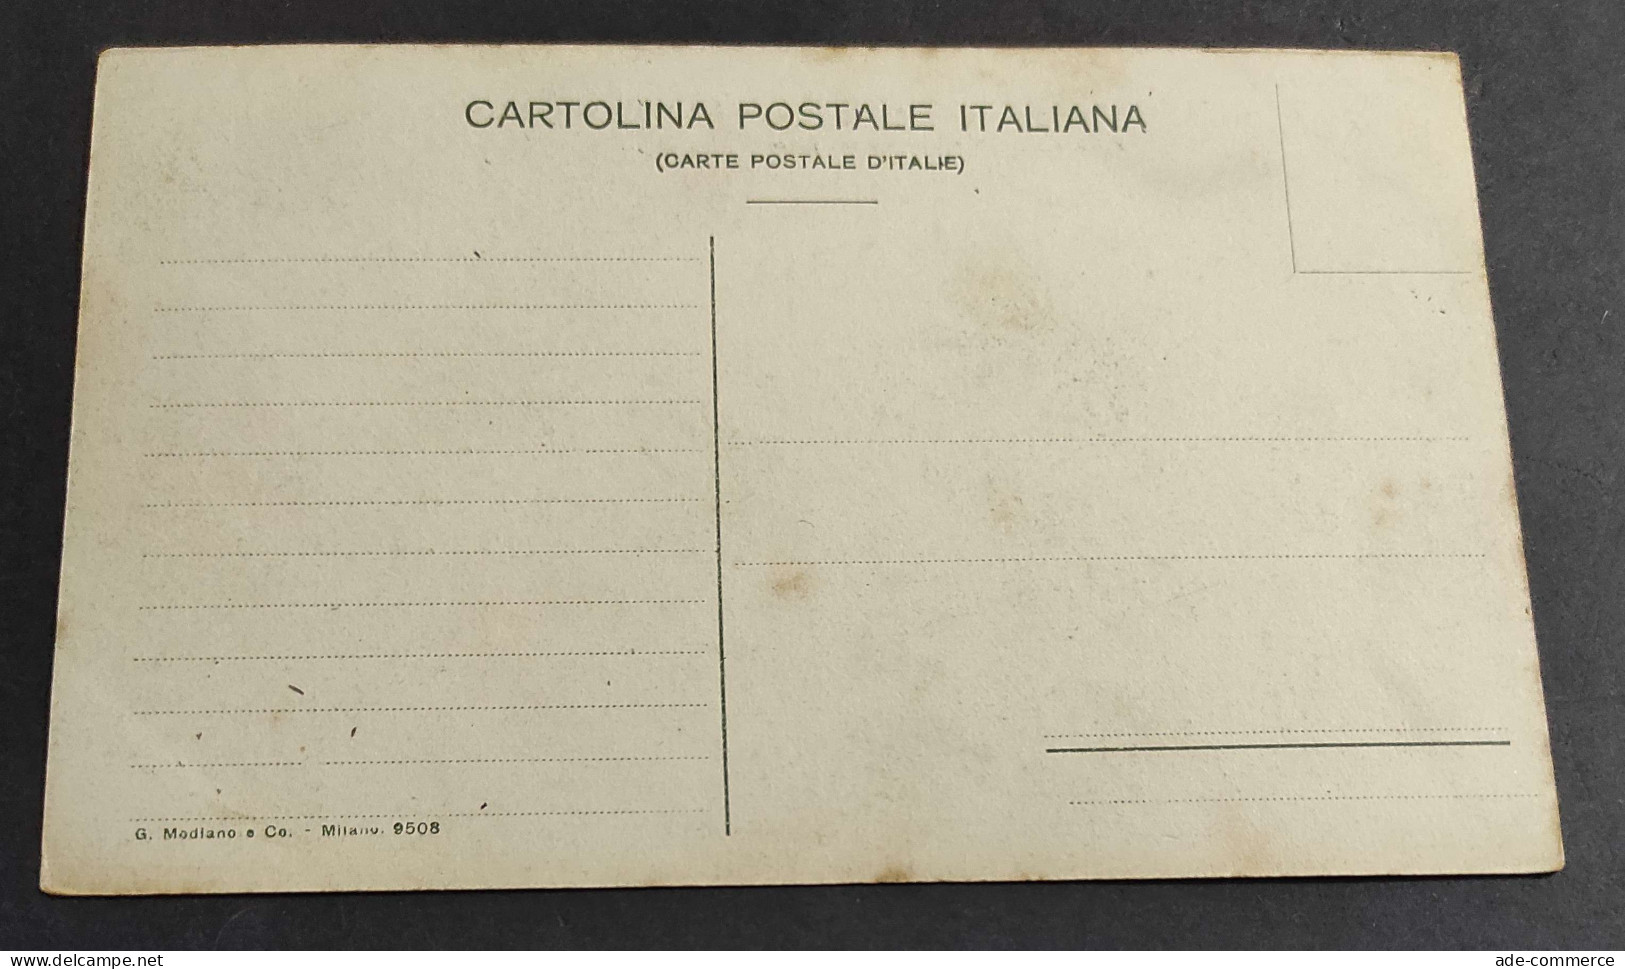 Cartolina Terremoto Nelle Calabrie - Parghelia - Interno Del Paese - Settembre 1905                                      - Vibo Valentia